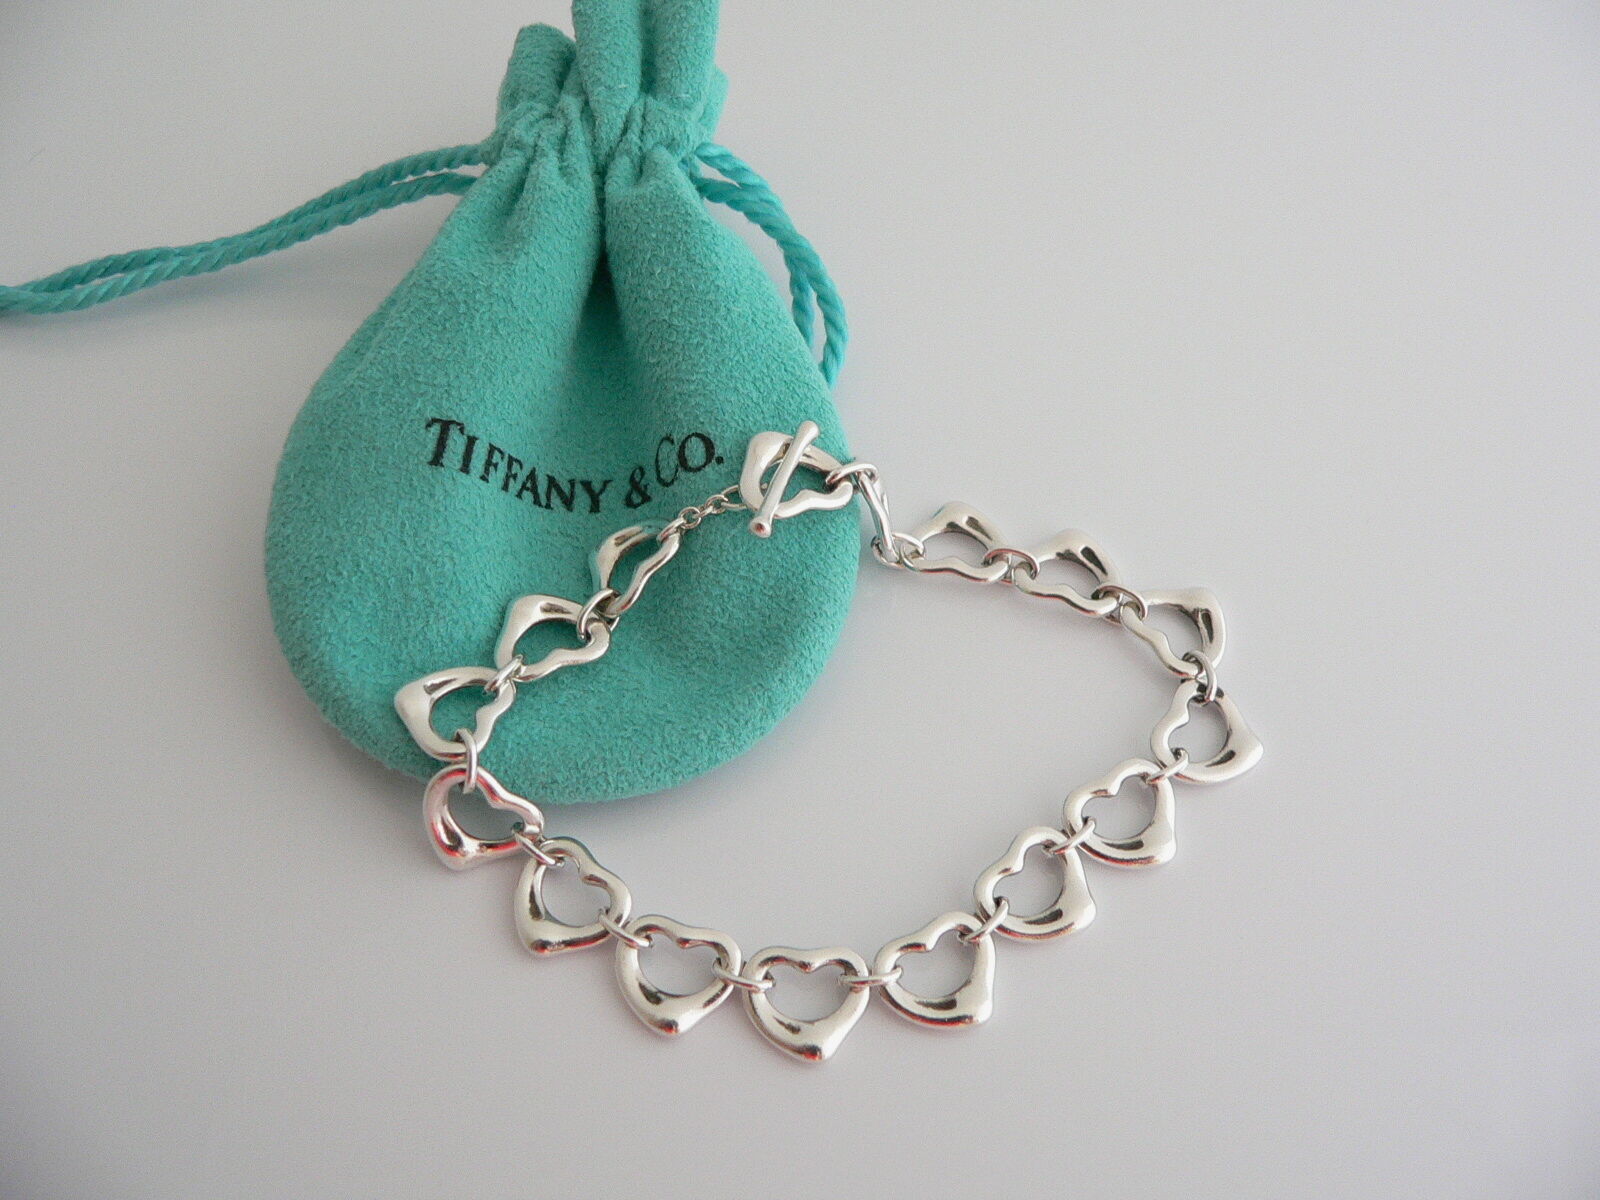 Tiffany & Co Silver Open Heart Link Bracelet Bangle Gift Love Pouch - $748.00